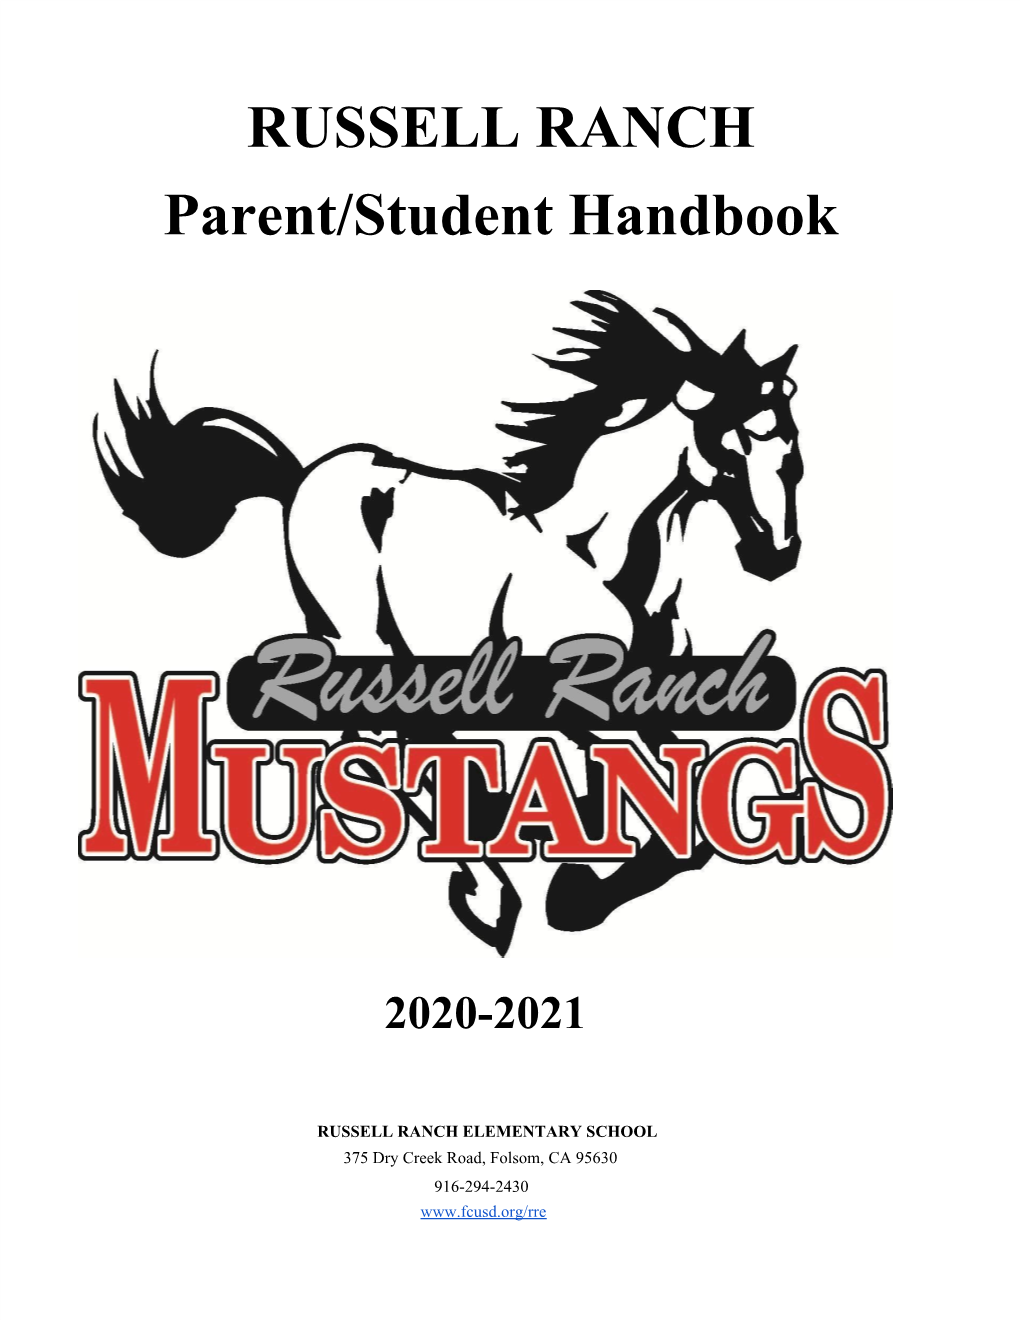 RUSSELL RANCH Parent/Student Handbook